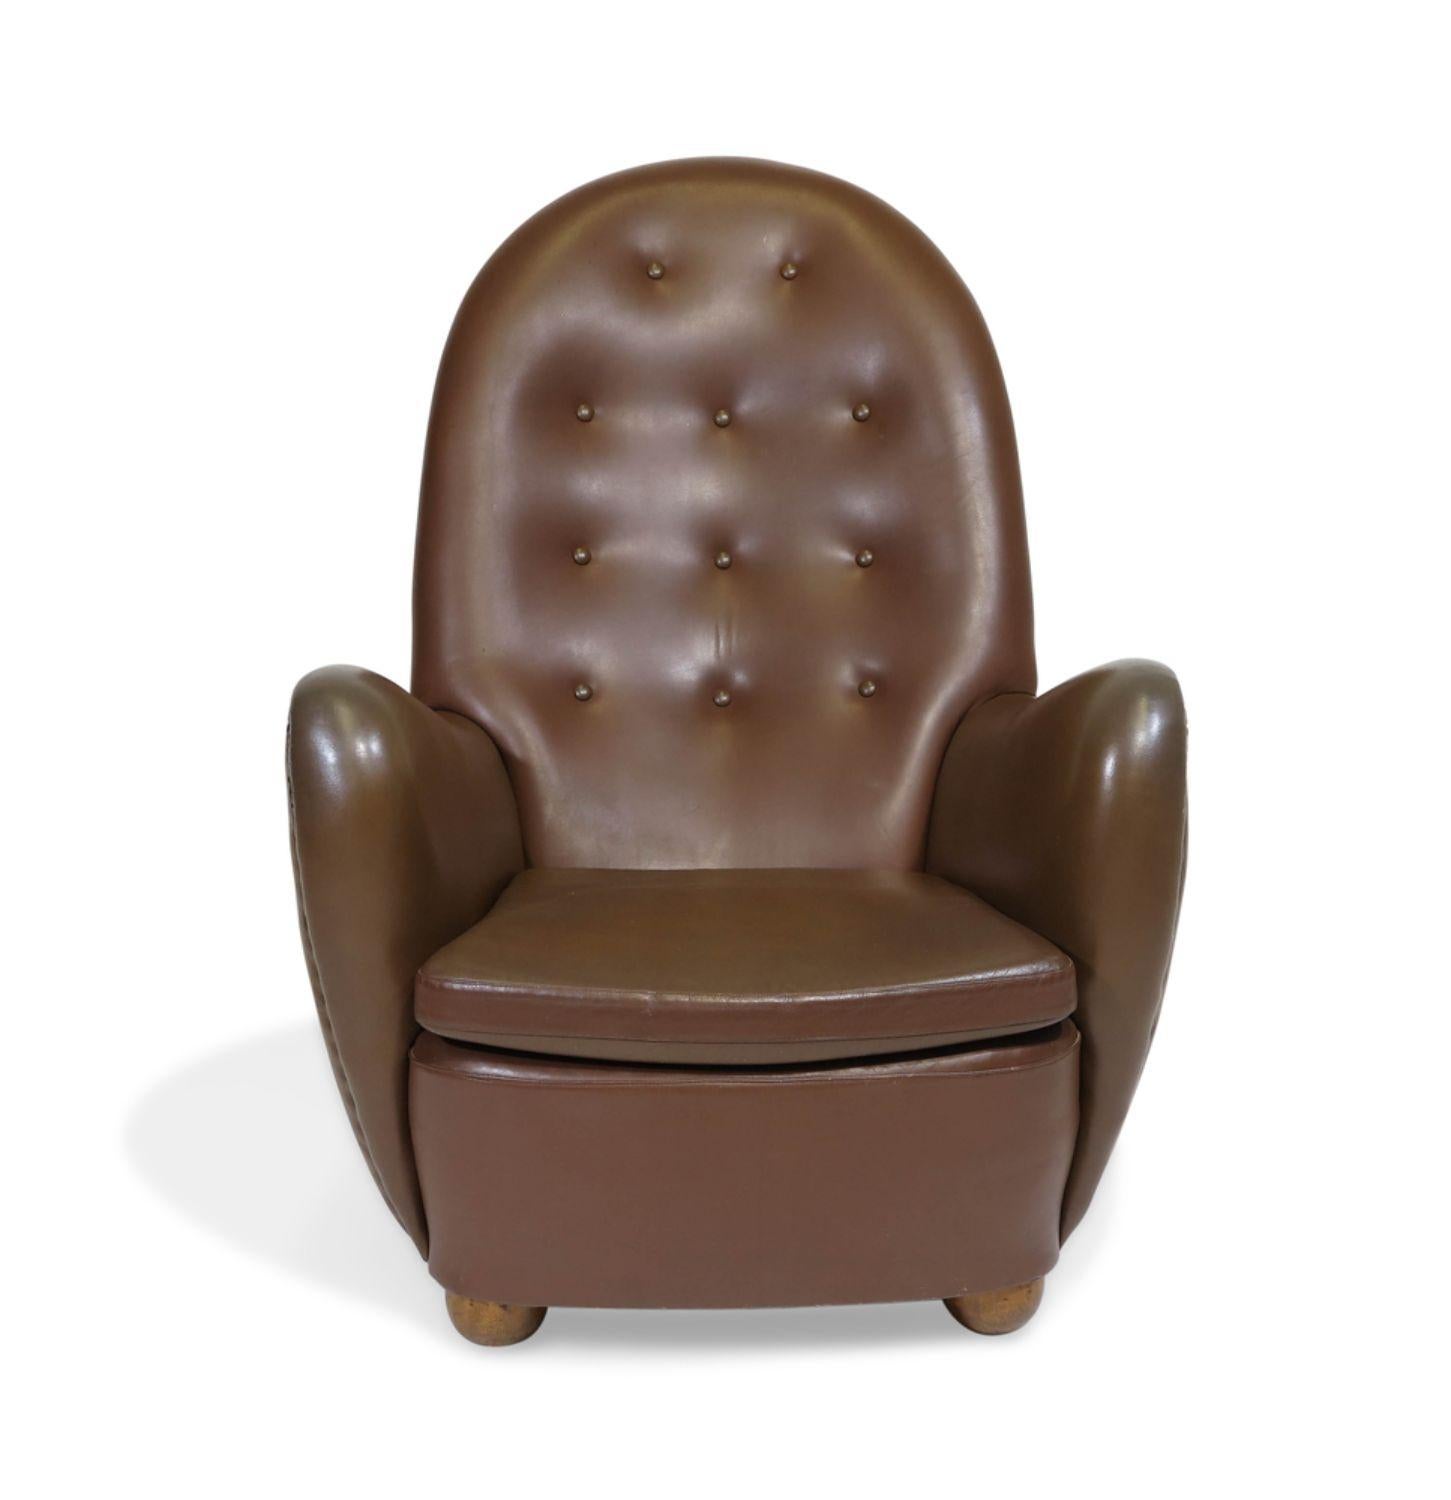 Seltener dänischer Loungesessel mit hoher Rückenlehne aus den 1940er Jahren, entworfen von George Kofoed, ca. 1940, Dänemark. Dieser exquisite Sessel zeichnet sich durch eine dramatisch abgerundete Rückenlehne und eine skulpturale Form aus, mit